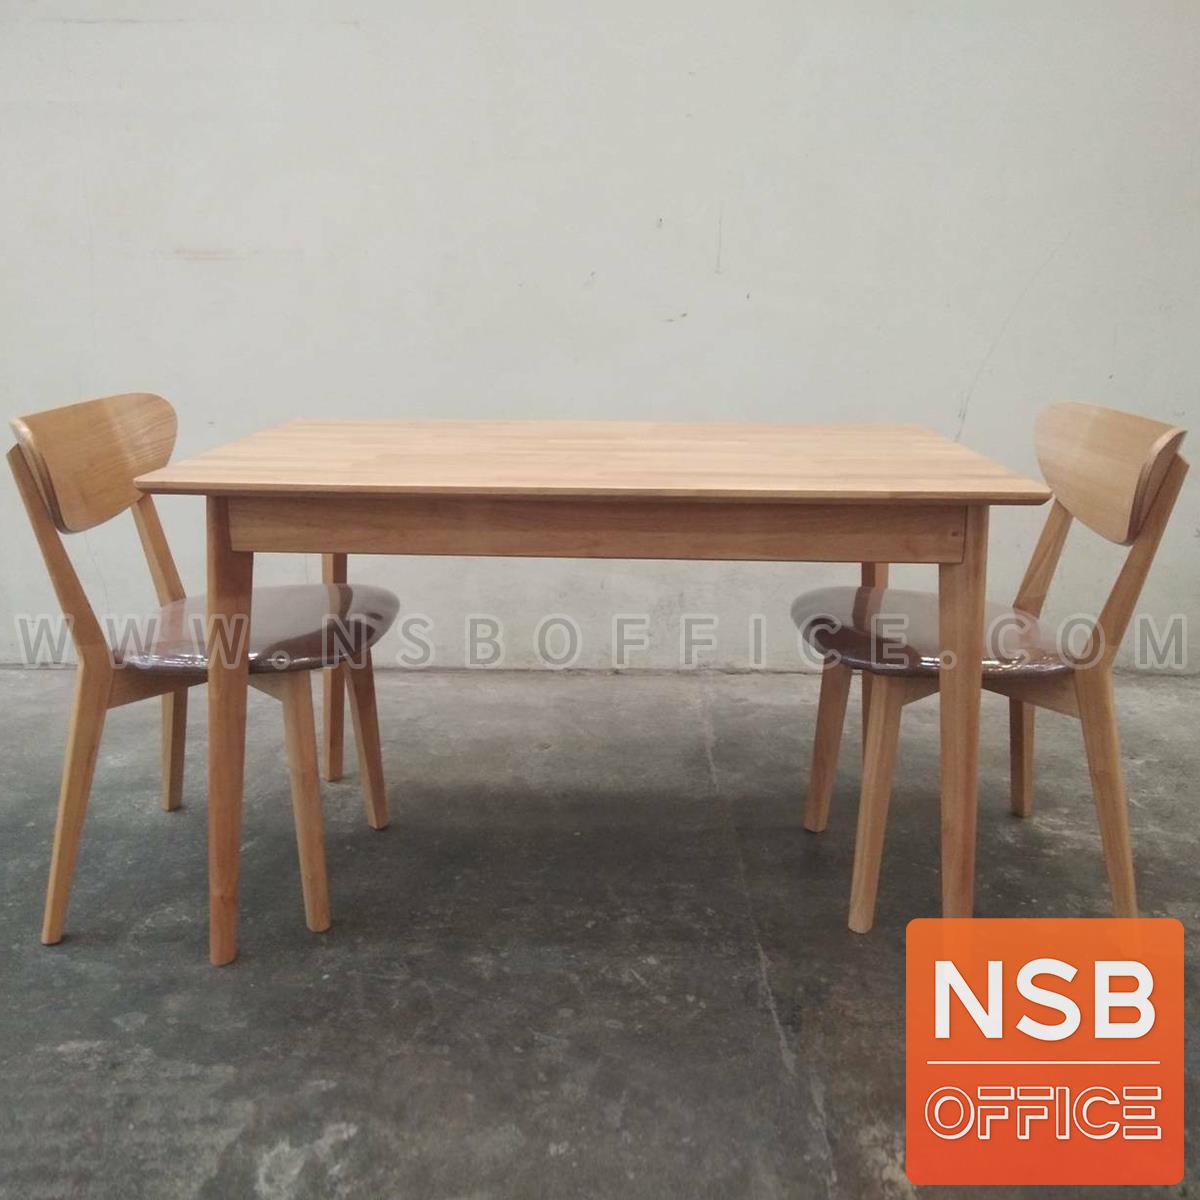 โต๊ะรับประทานอาหารไม้ยางพารา รุ่น Jinny (จินนี่) ขนาด 120W, 150W, 180W cm. (ไม่รวมเก้าอี้)